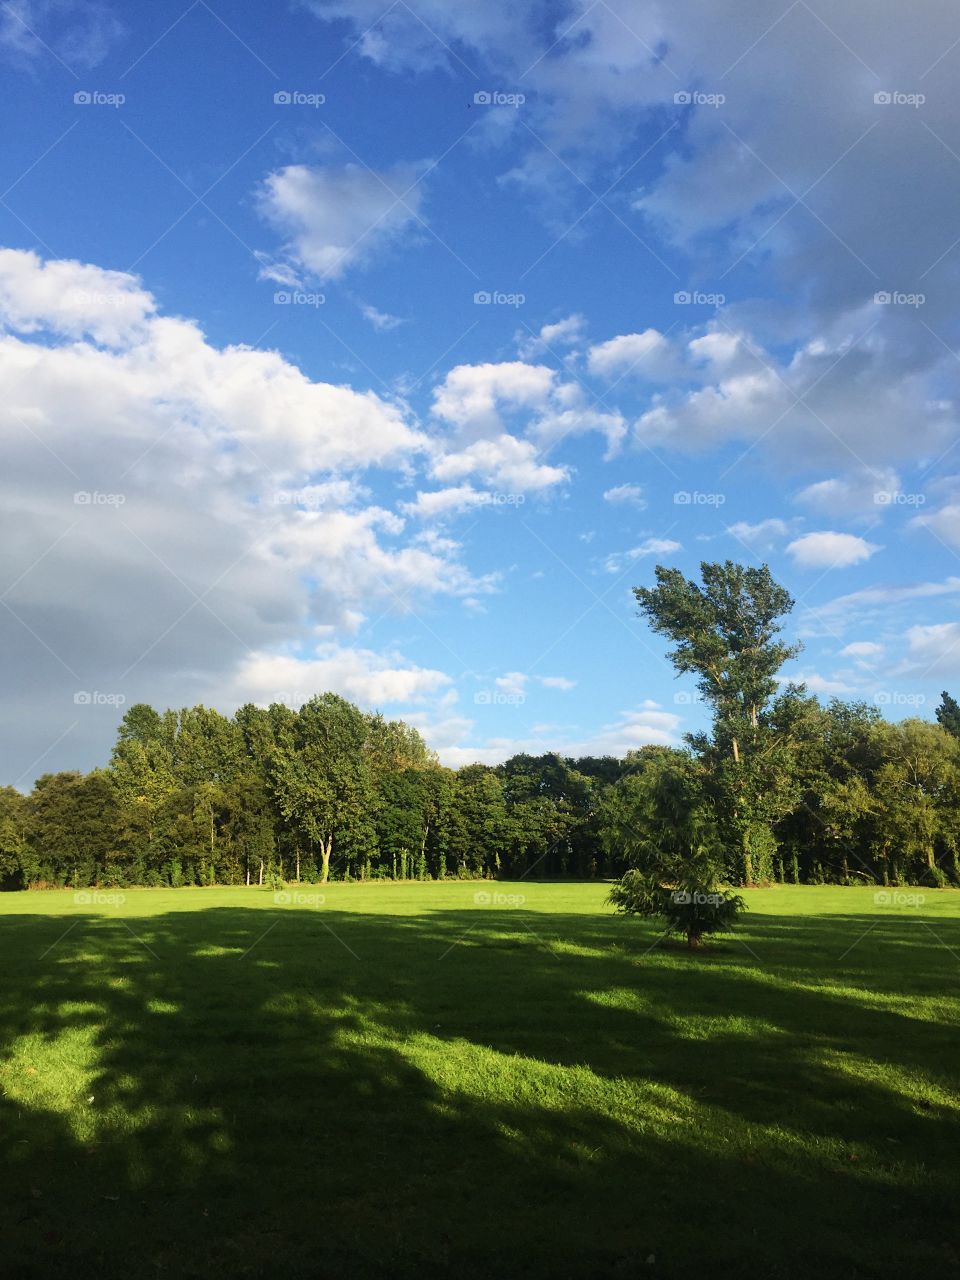 Landscape, No Person, Grass, Golf, Tree